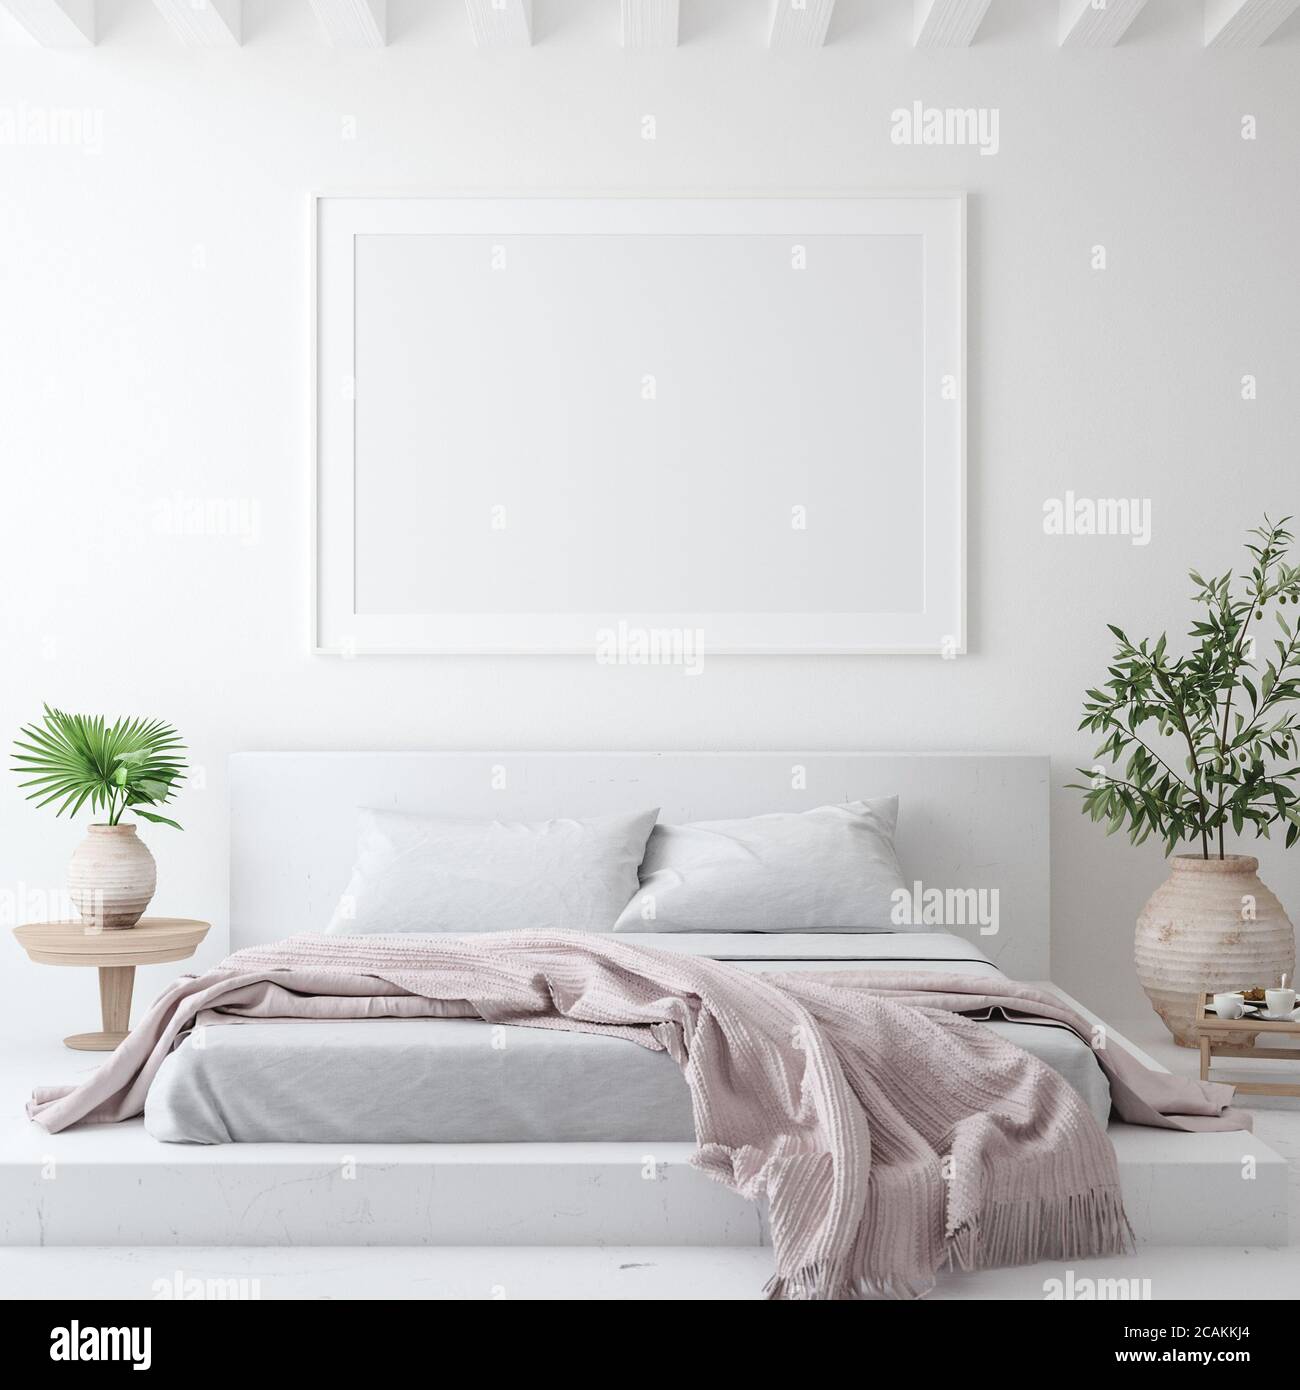 Cadre poster maquette dans intérieur blanc confortable de chambre, style scandinave, rendu 3d Banque D'Images